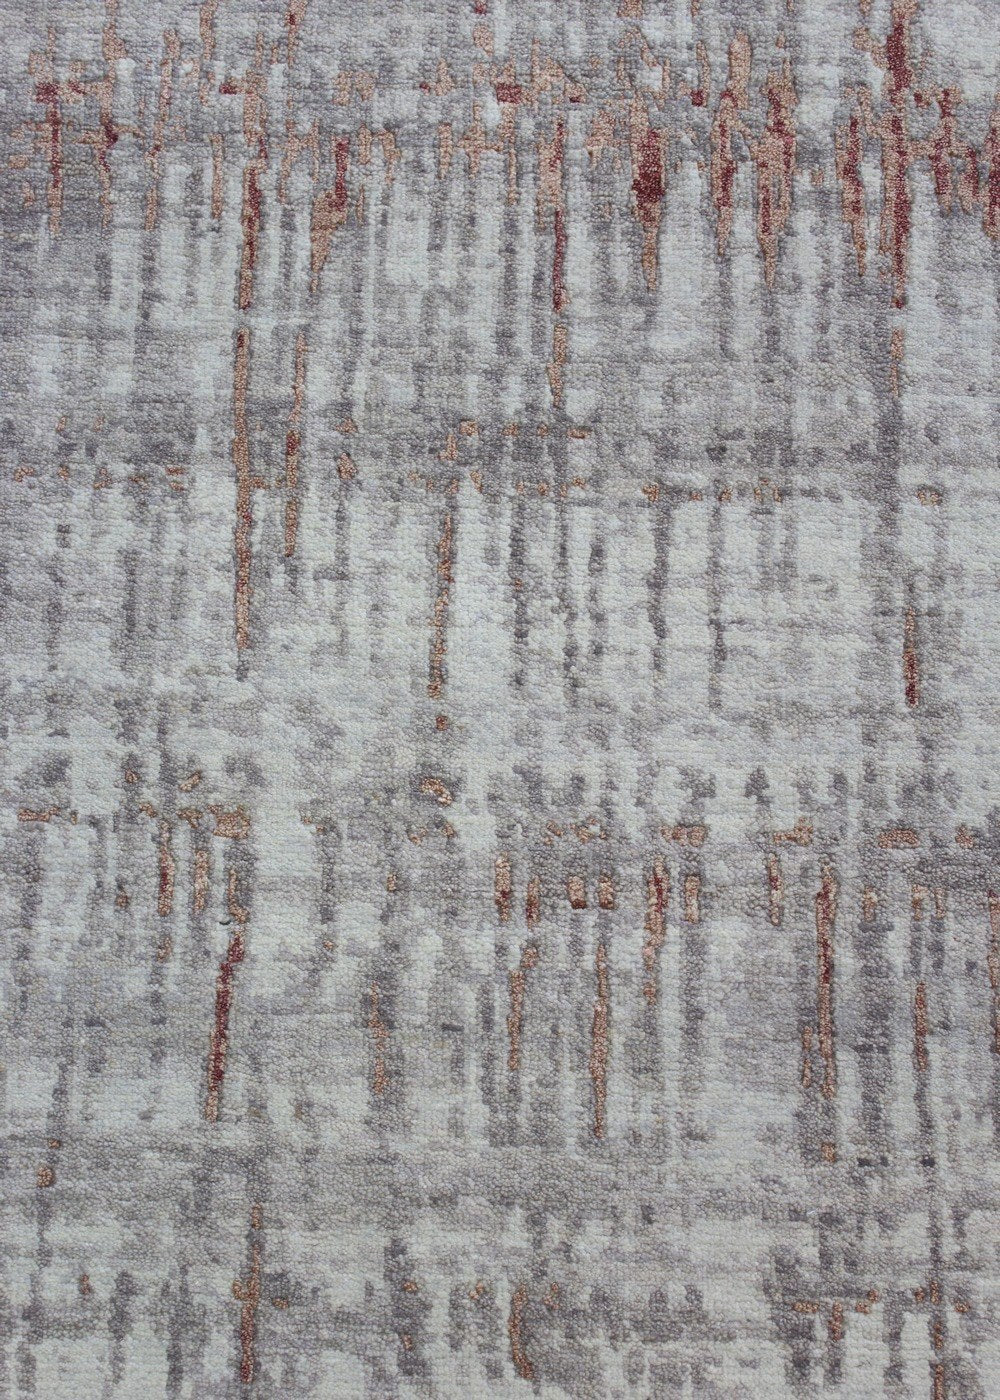 Mesa Handwoven Contemporary Rug, J69119